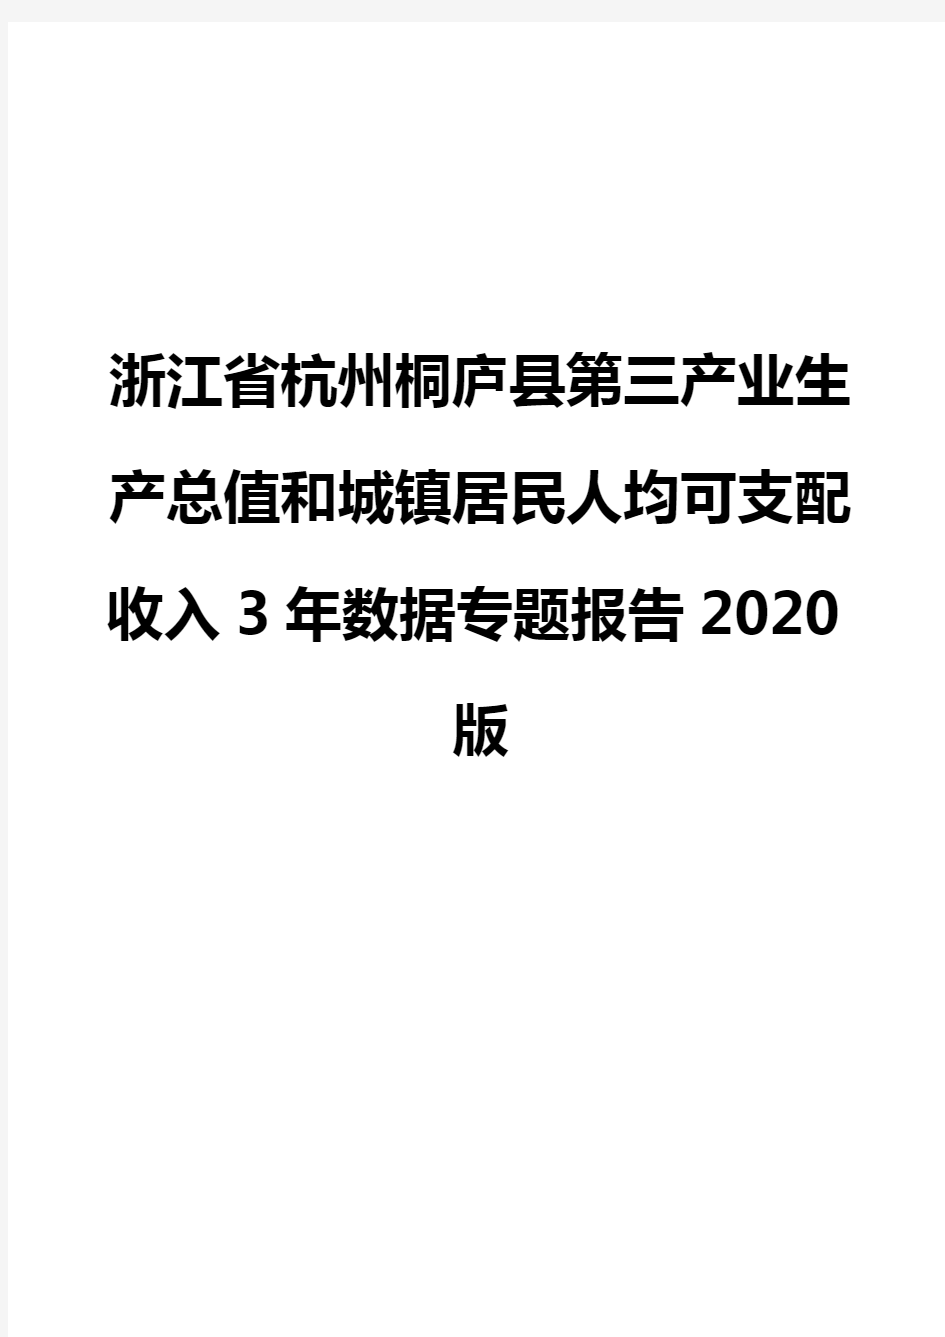 浙江省杭州桐庐县第三产业生产总值和城镇居民人均可支配收入3年数据专题报告2020版